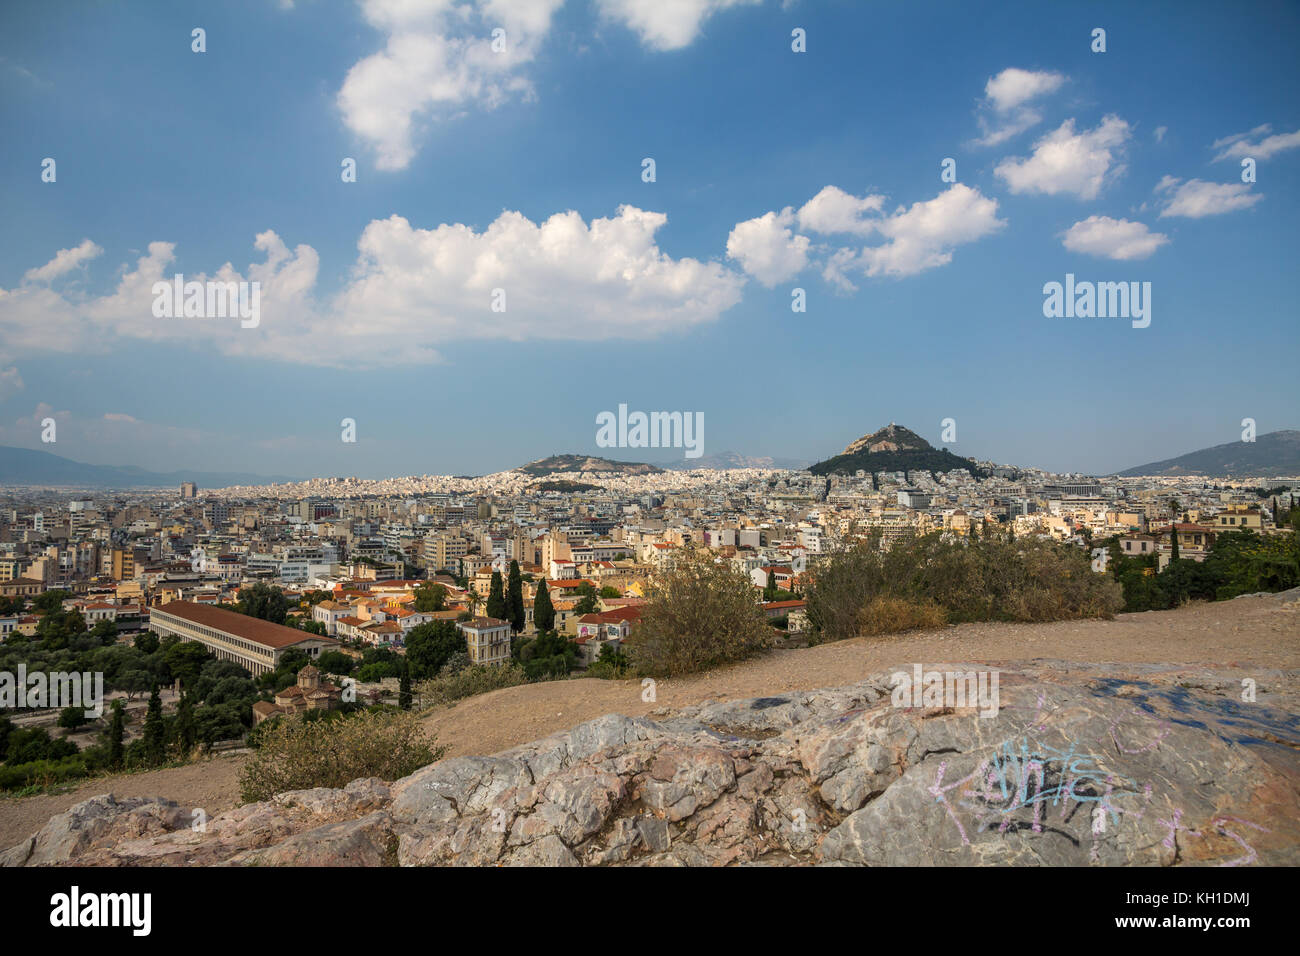 La città di Atene si diffonde al di sotto di mars hill dove le rocce in primo piano sono state ornate da grafitti. luce bianco delle nuvole galleggiante nelle acque azzurre del blu Foto Stock